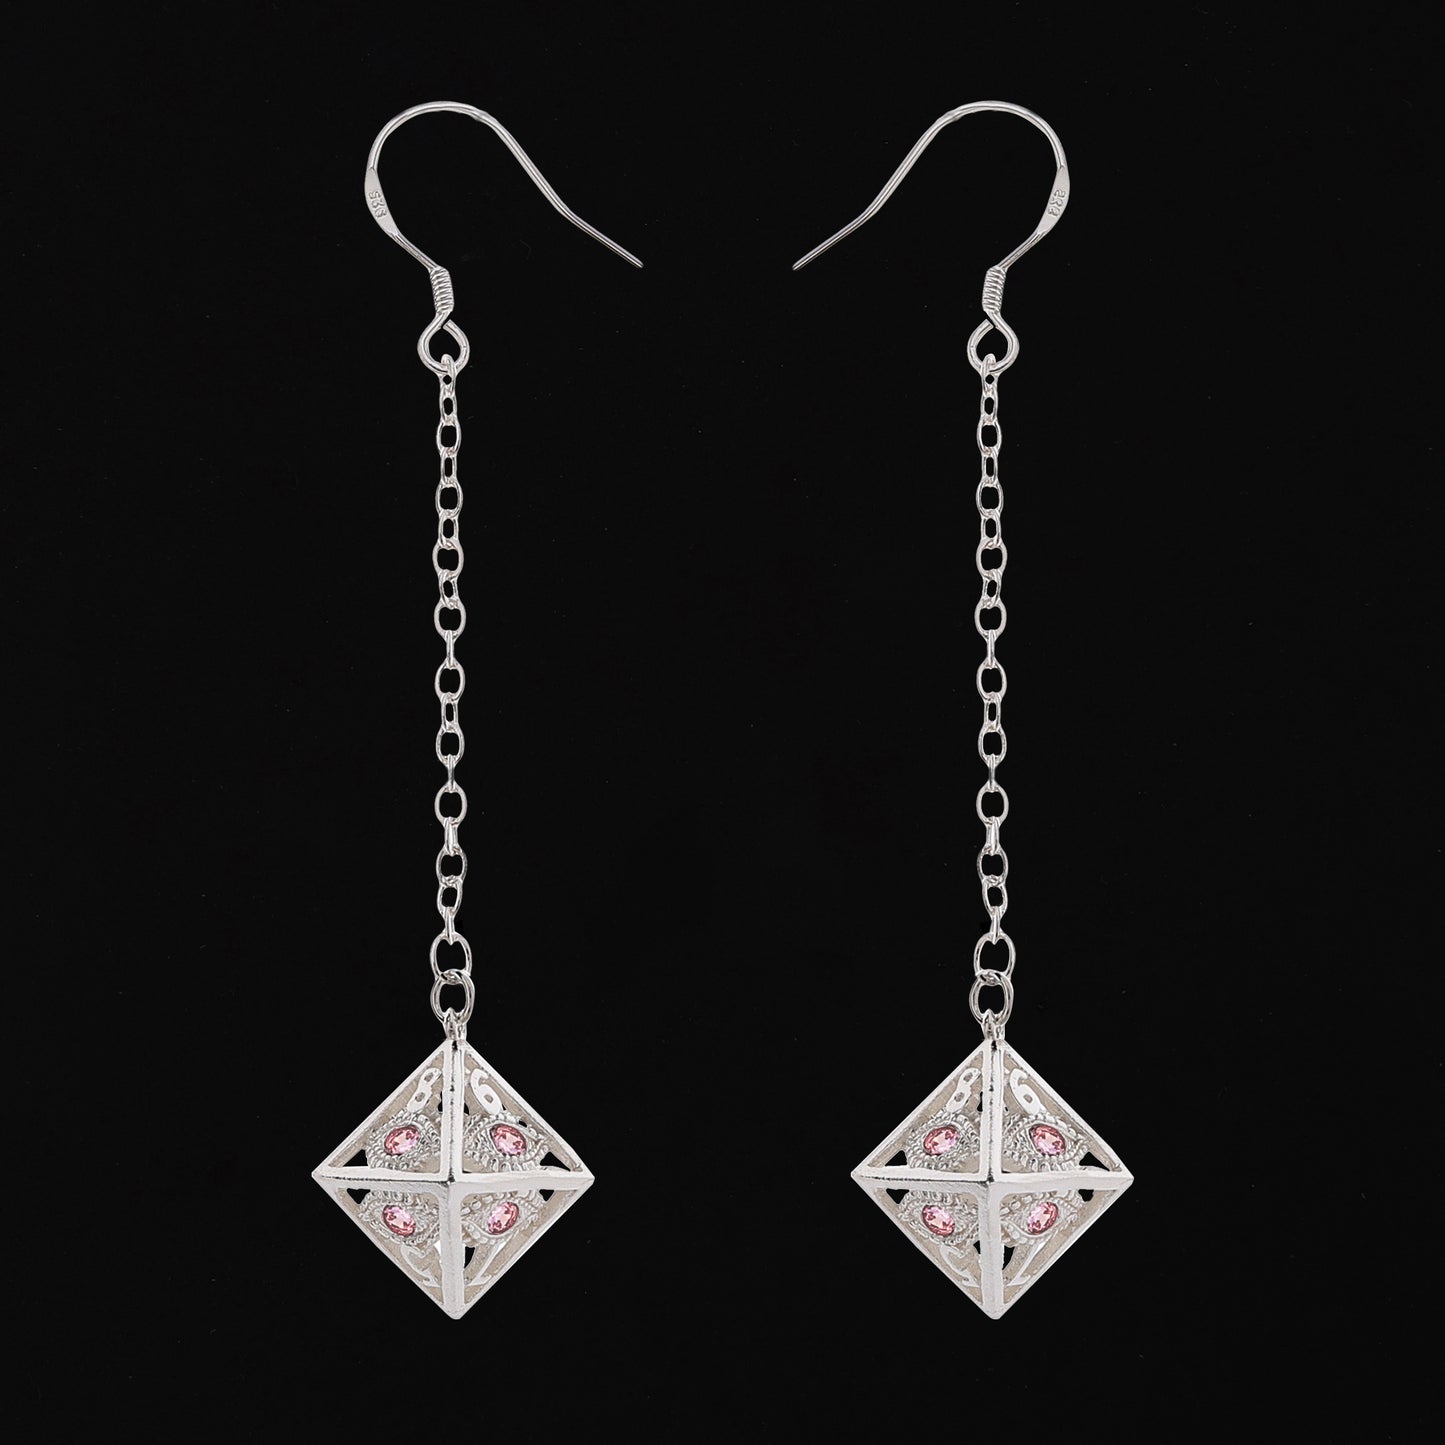 Dragon's eye D8 earrings-Silver w/Pink gems